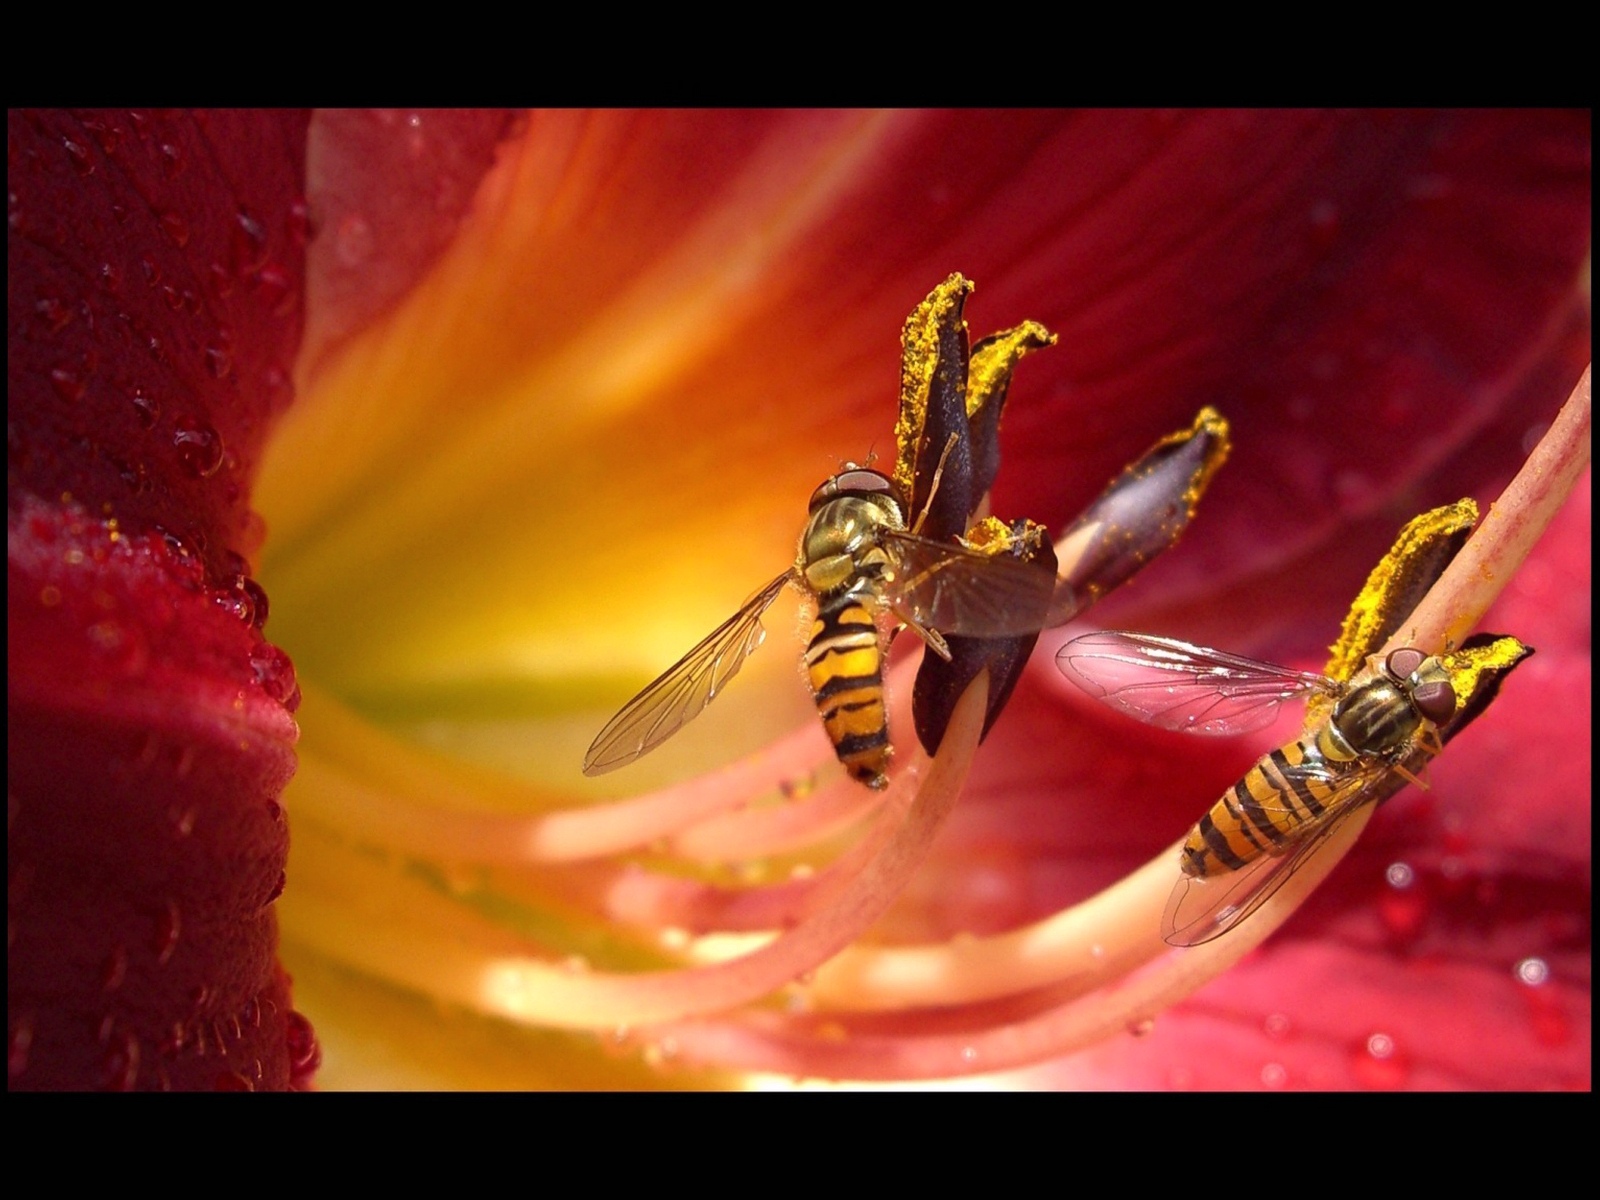 Descarga gratuita de fondo de pantalla para móvil de Avispa, Insectos, Flor, Animales.